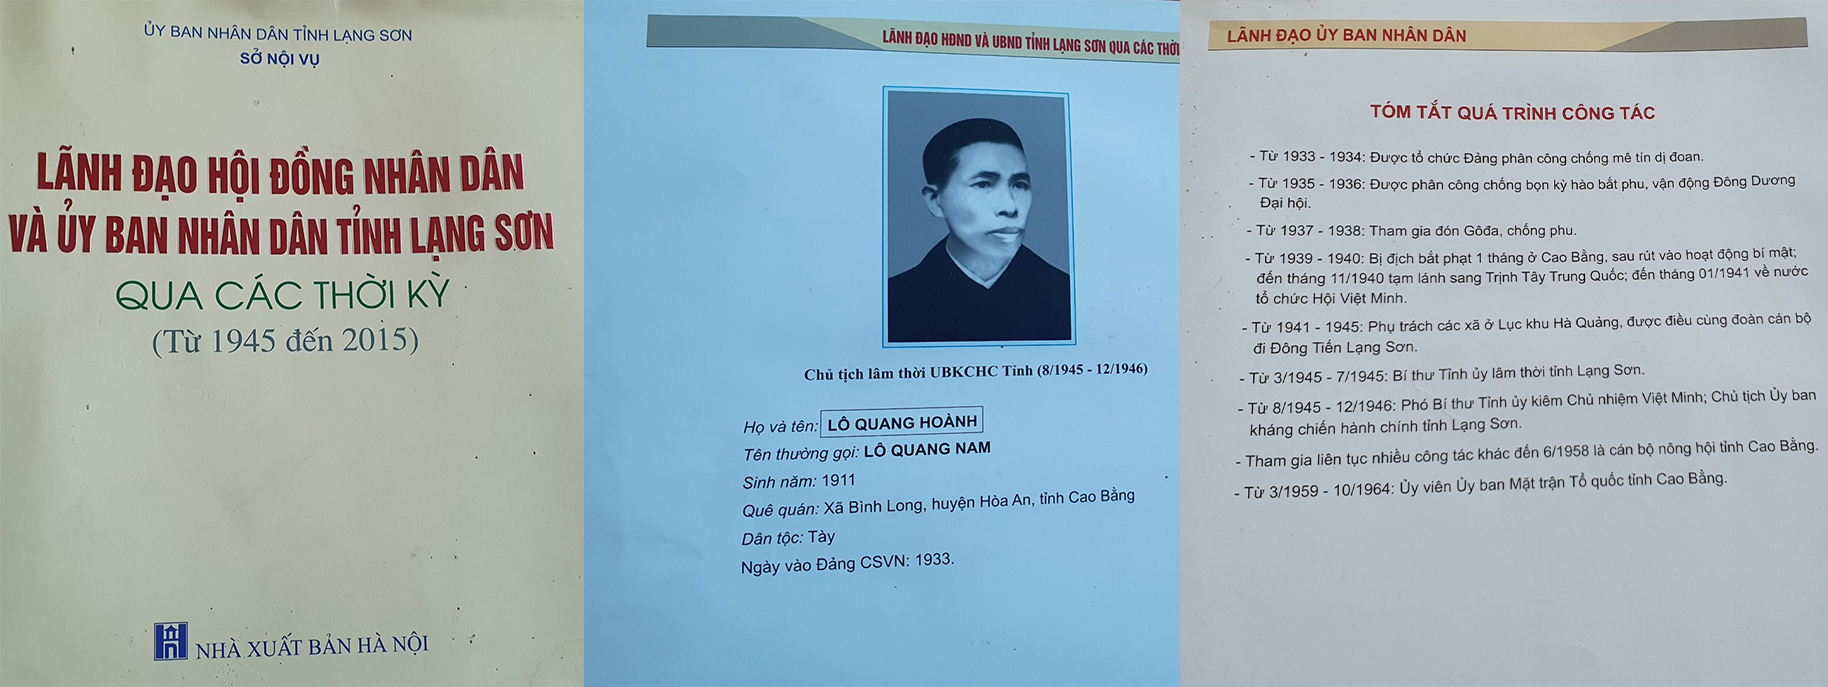 Thông tin về Lão thành cách mạng Lô Quang Nam.